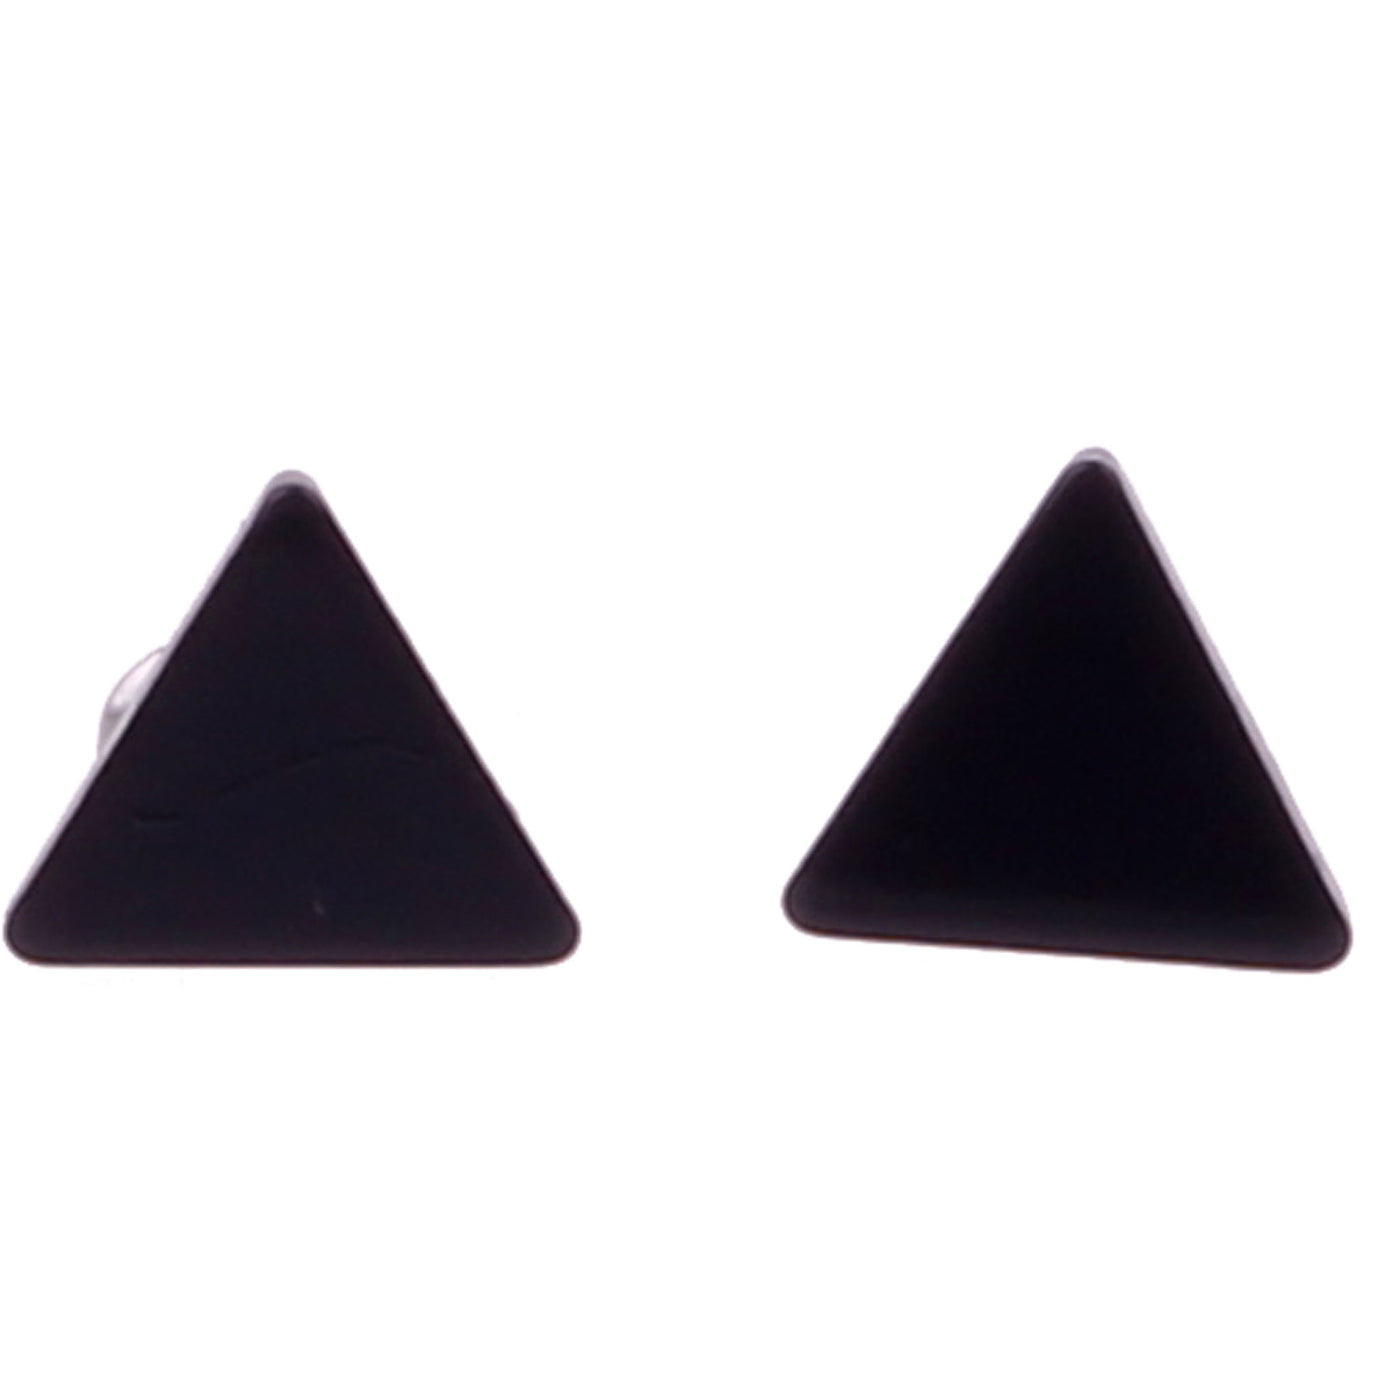 Steel triangle earrings 9mm